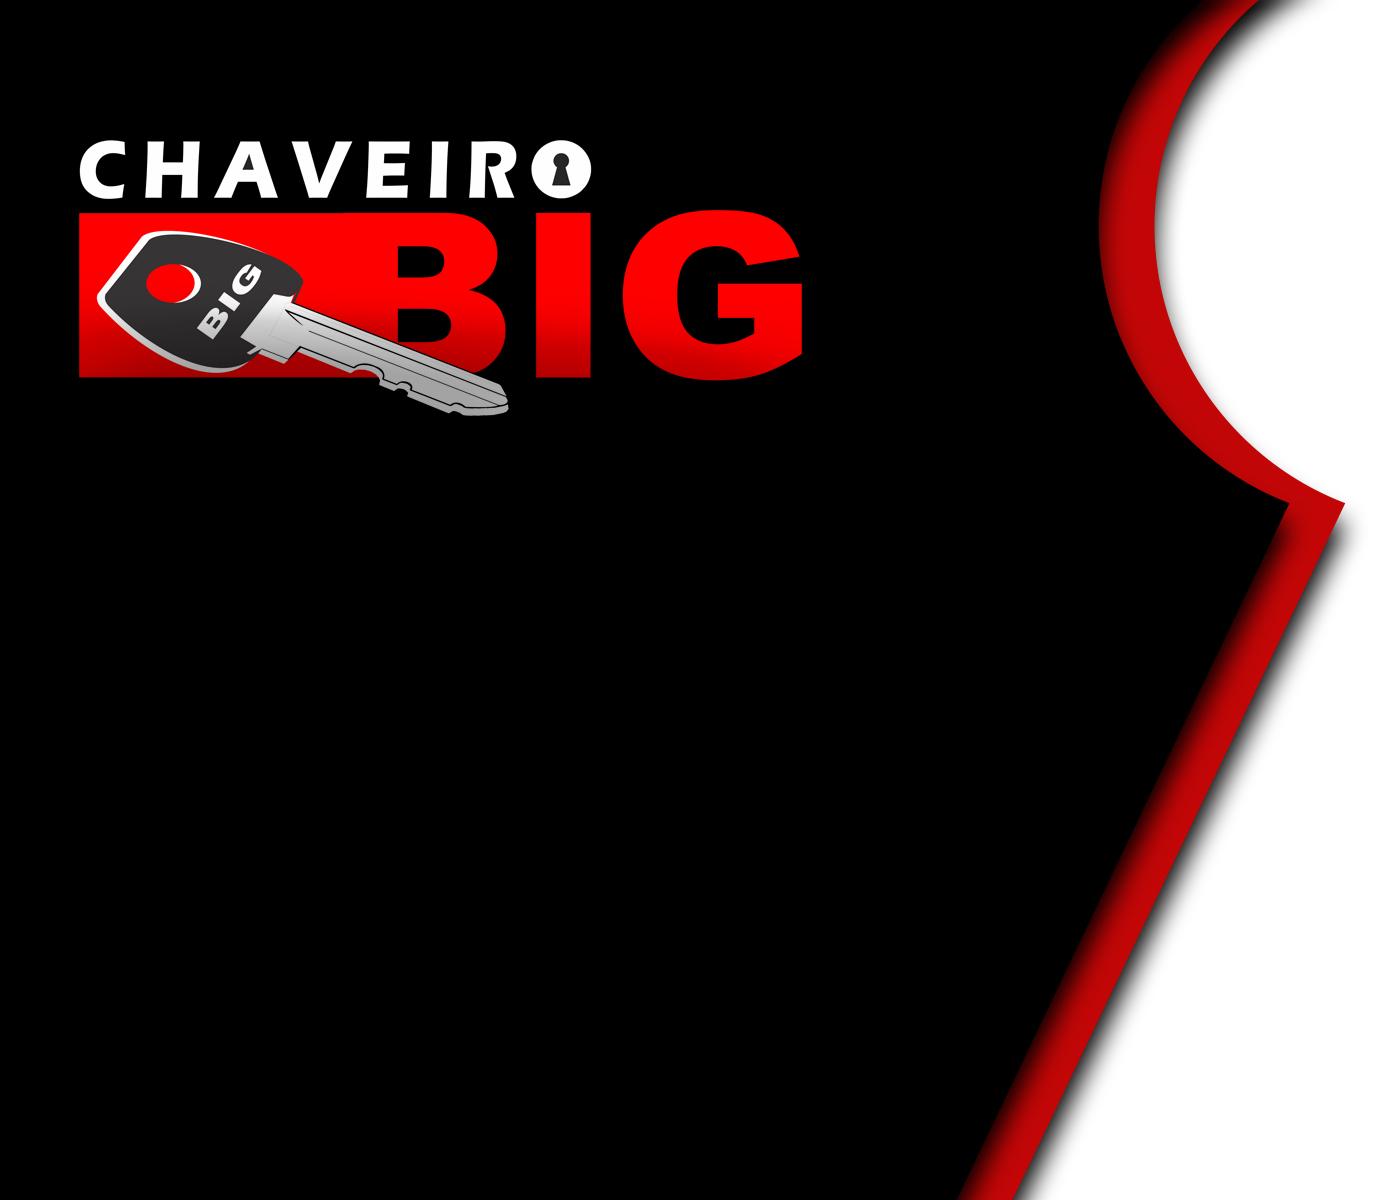 CHAVEIRO BIG logo